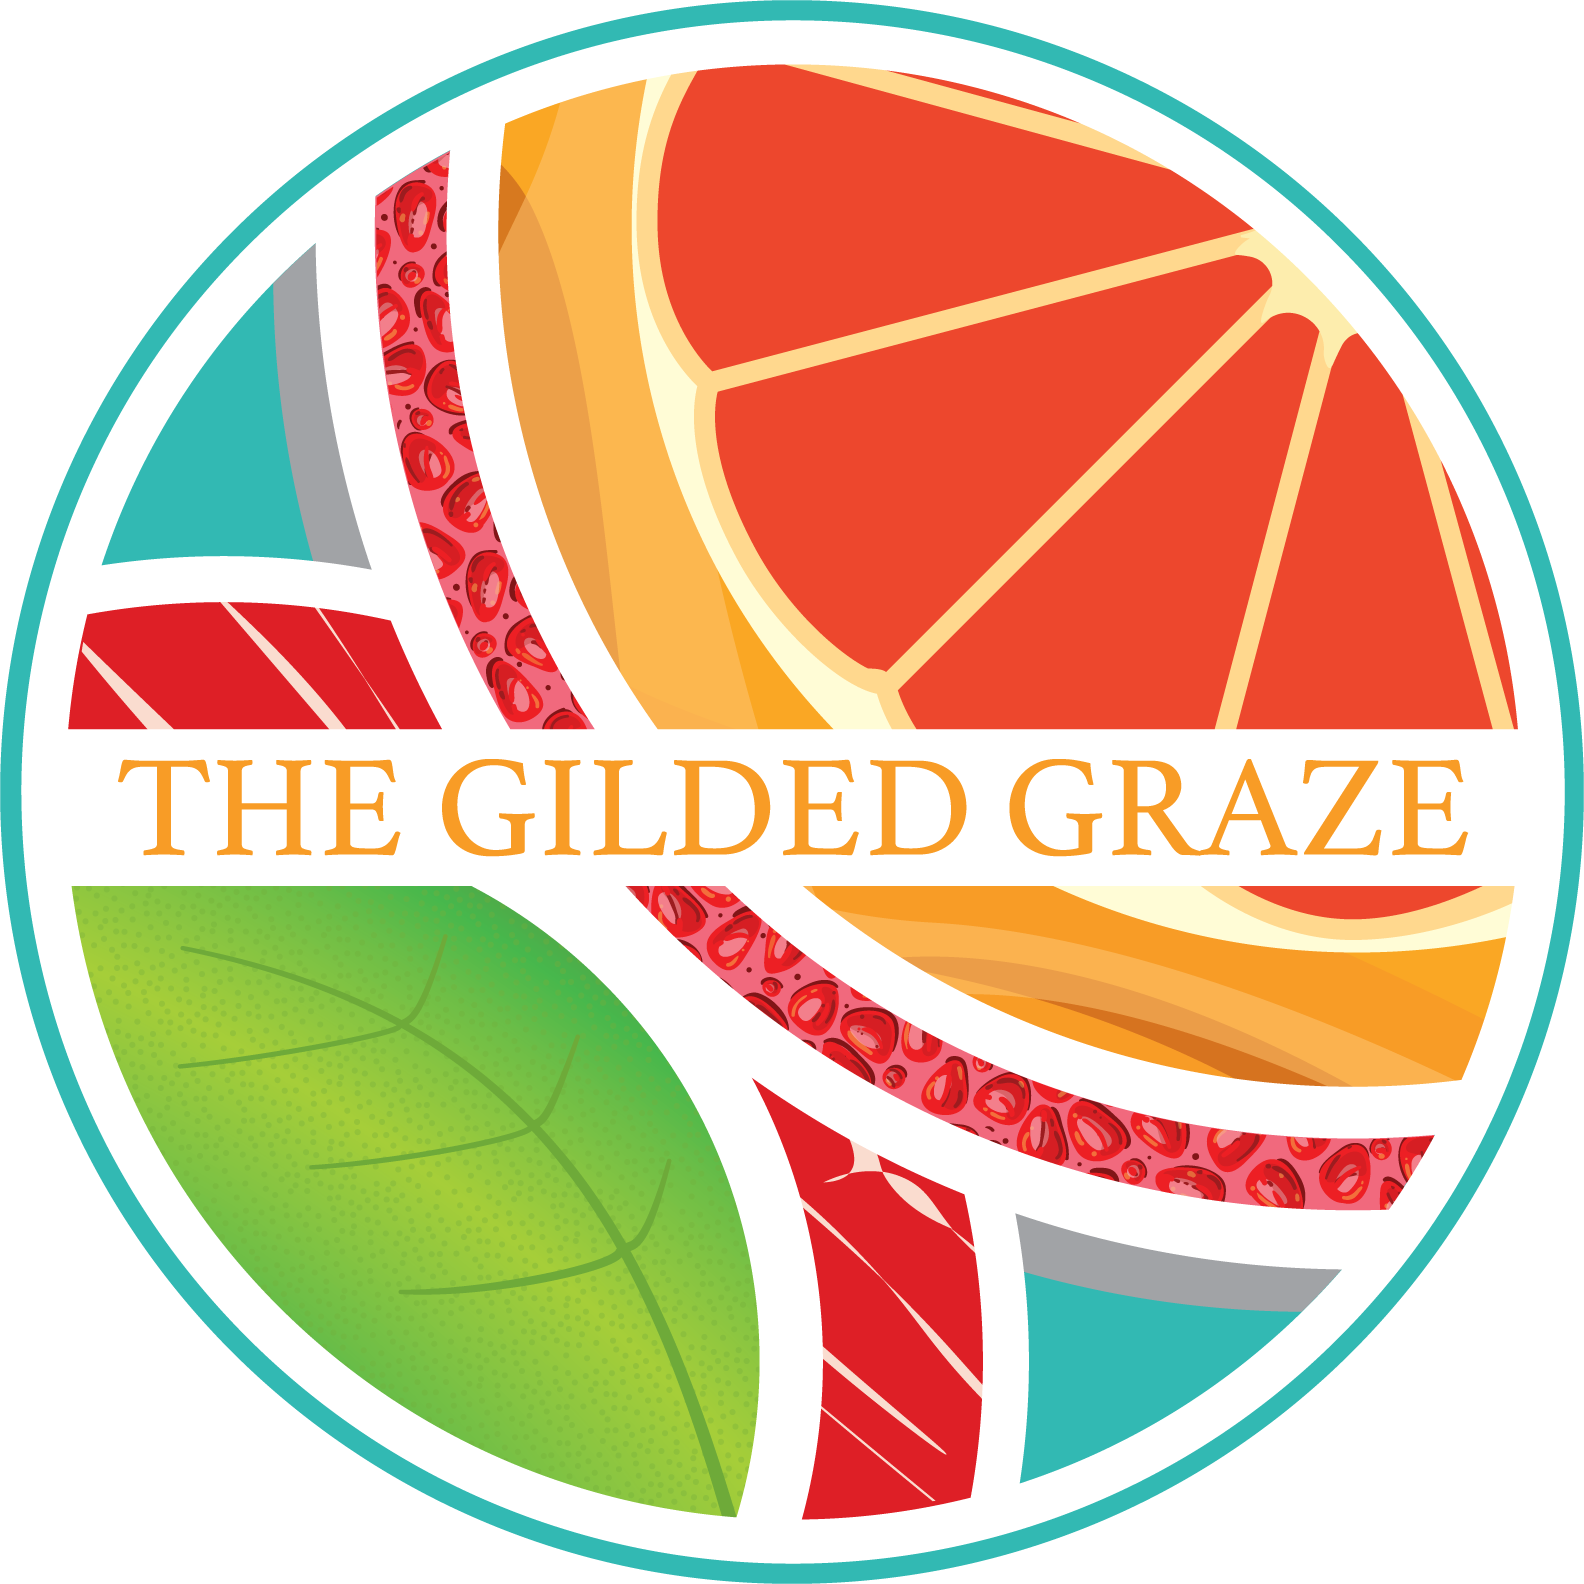 The Gilded Graze